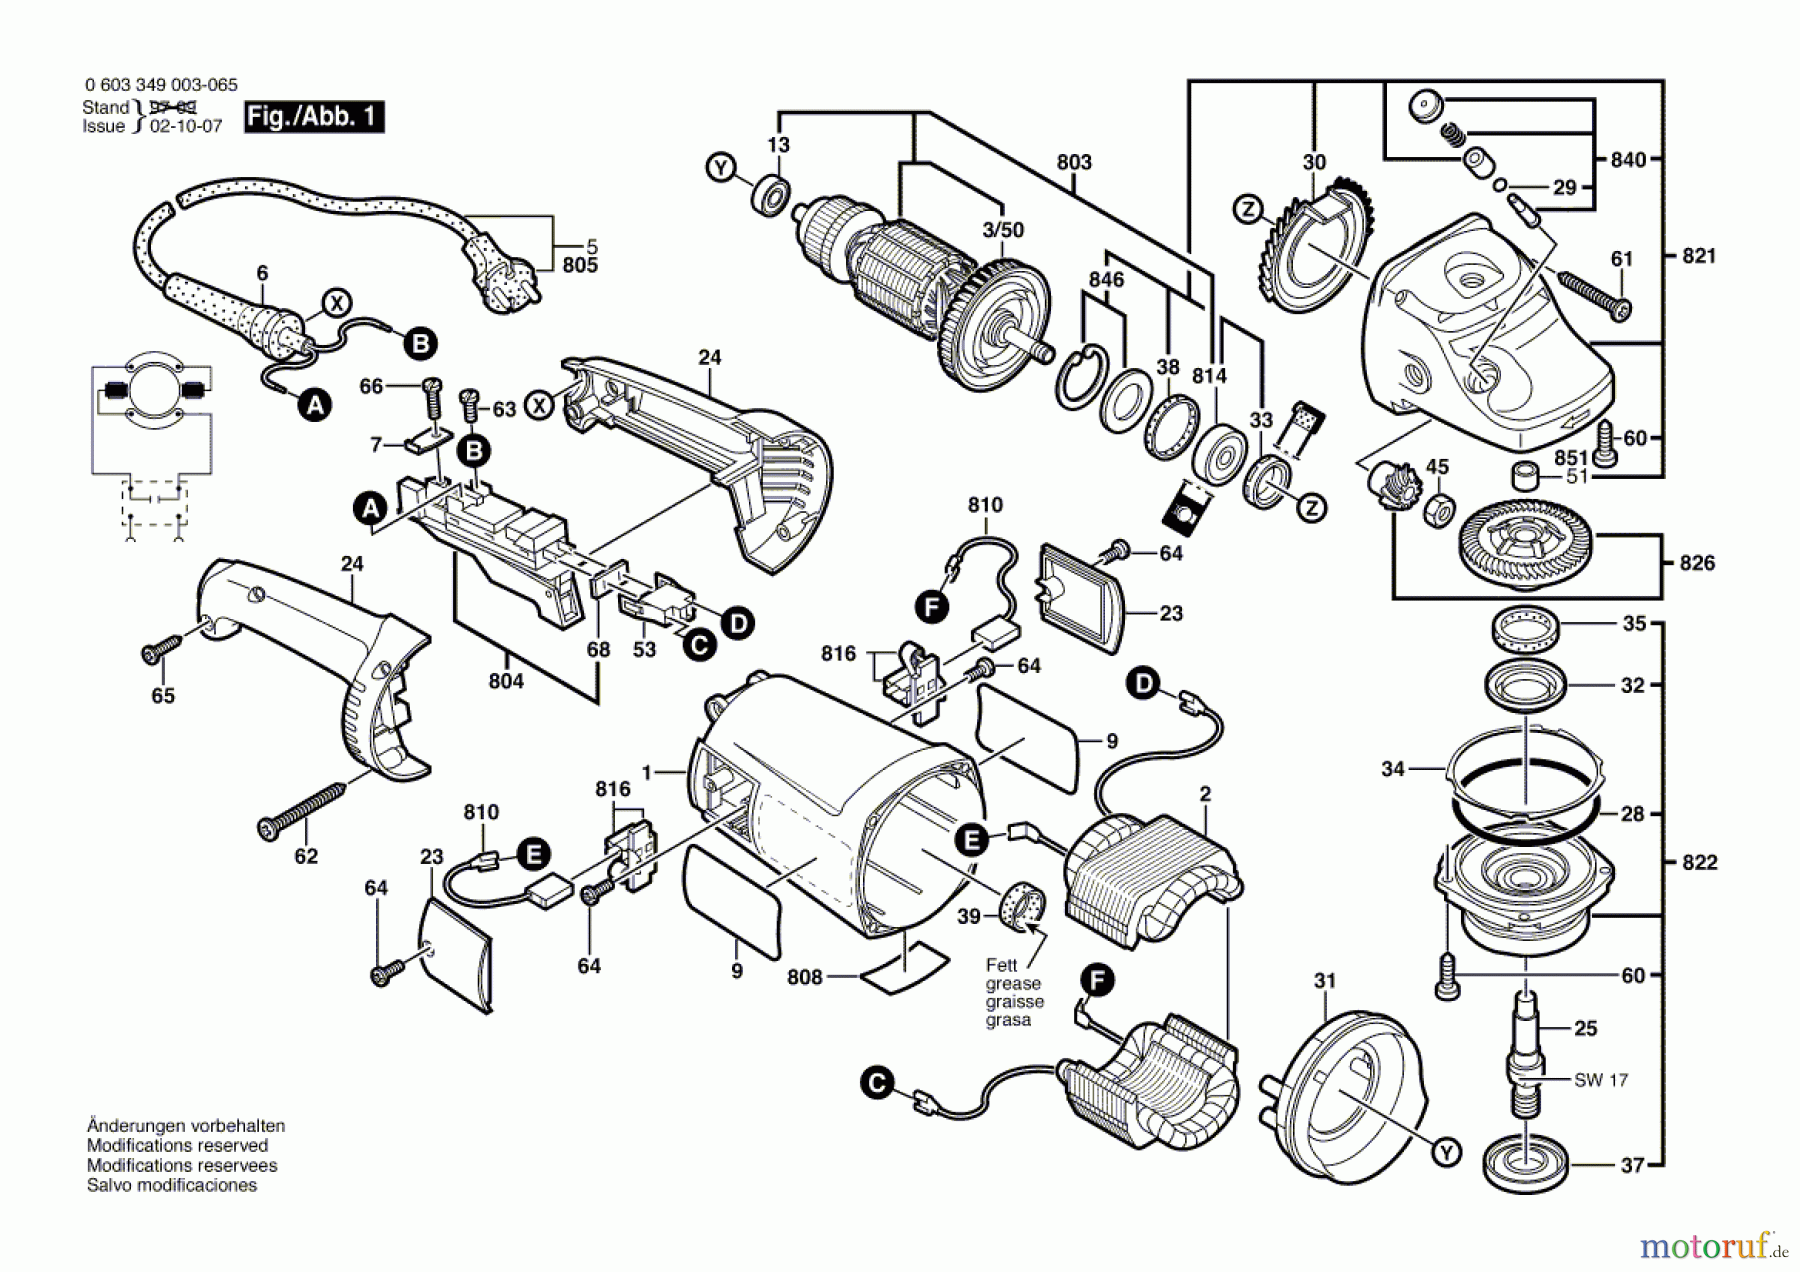  Bosch Werkzeug Winkelschleifer PWS 20-230 Seite 1